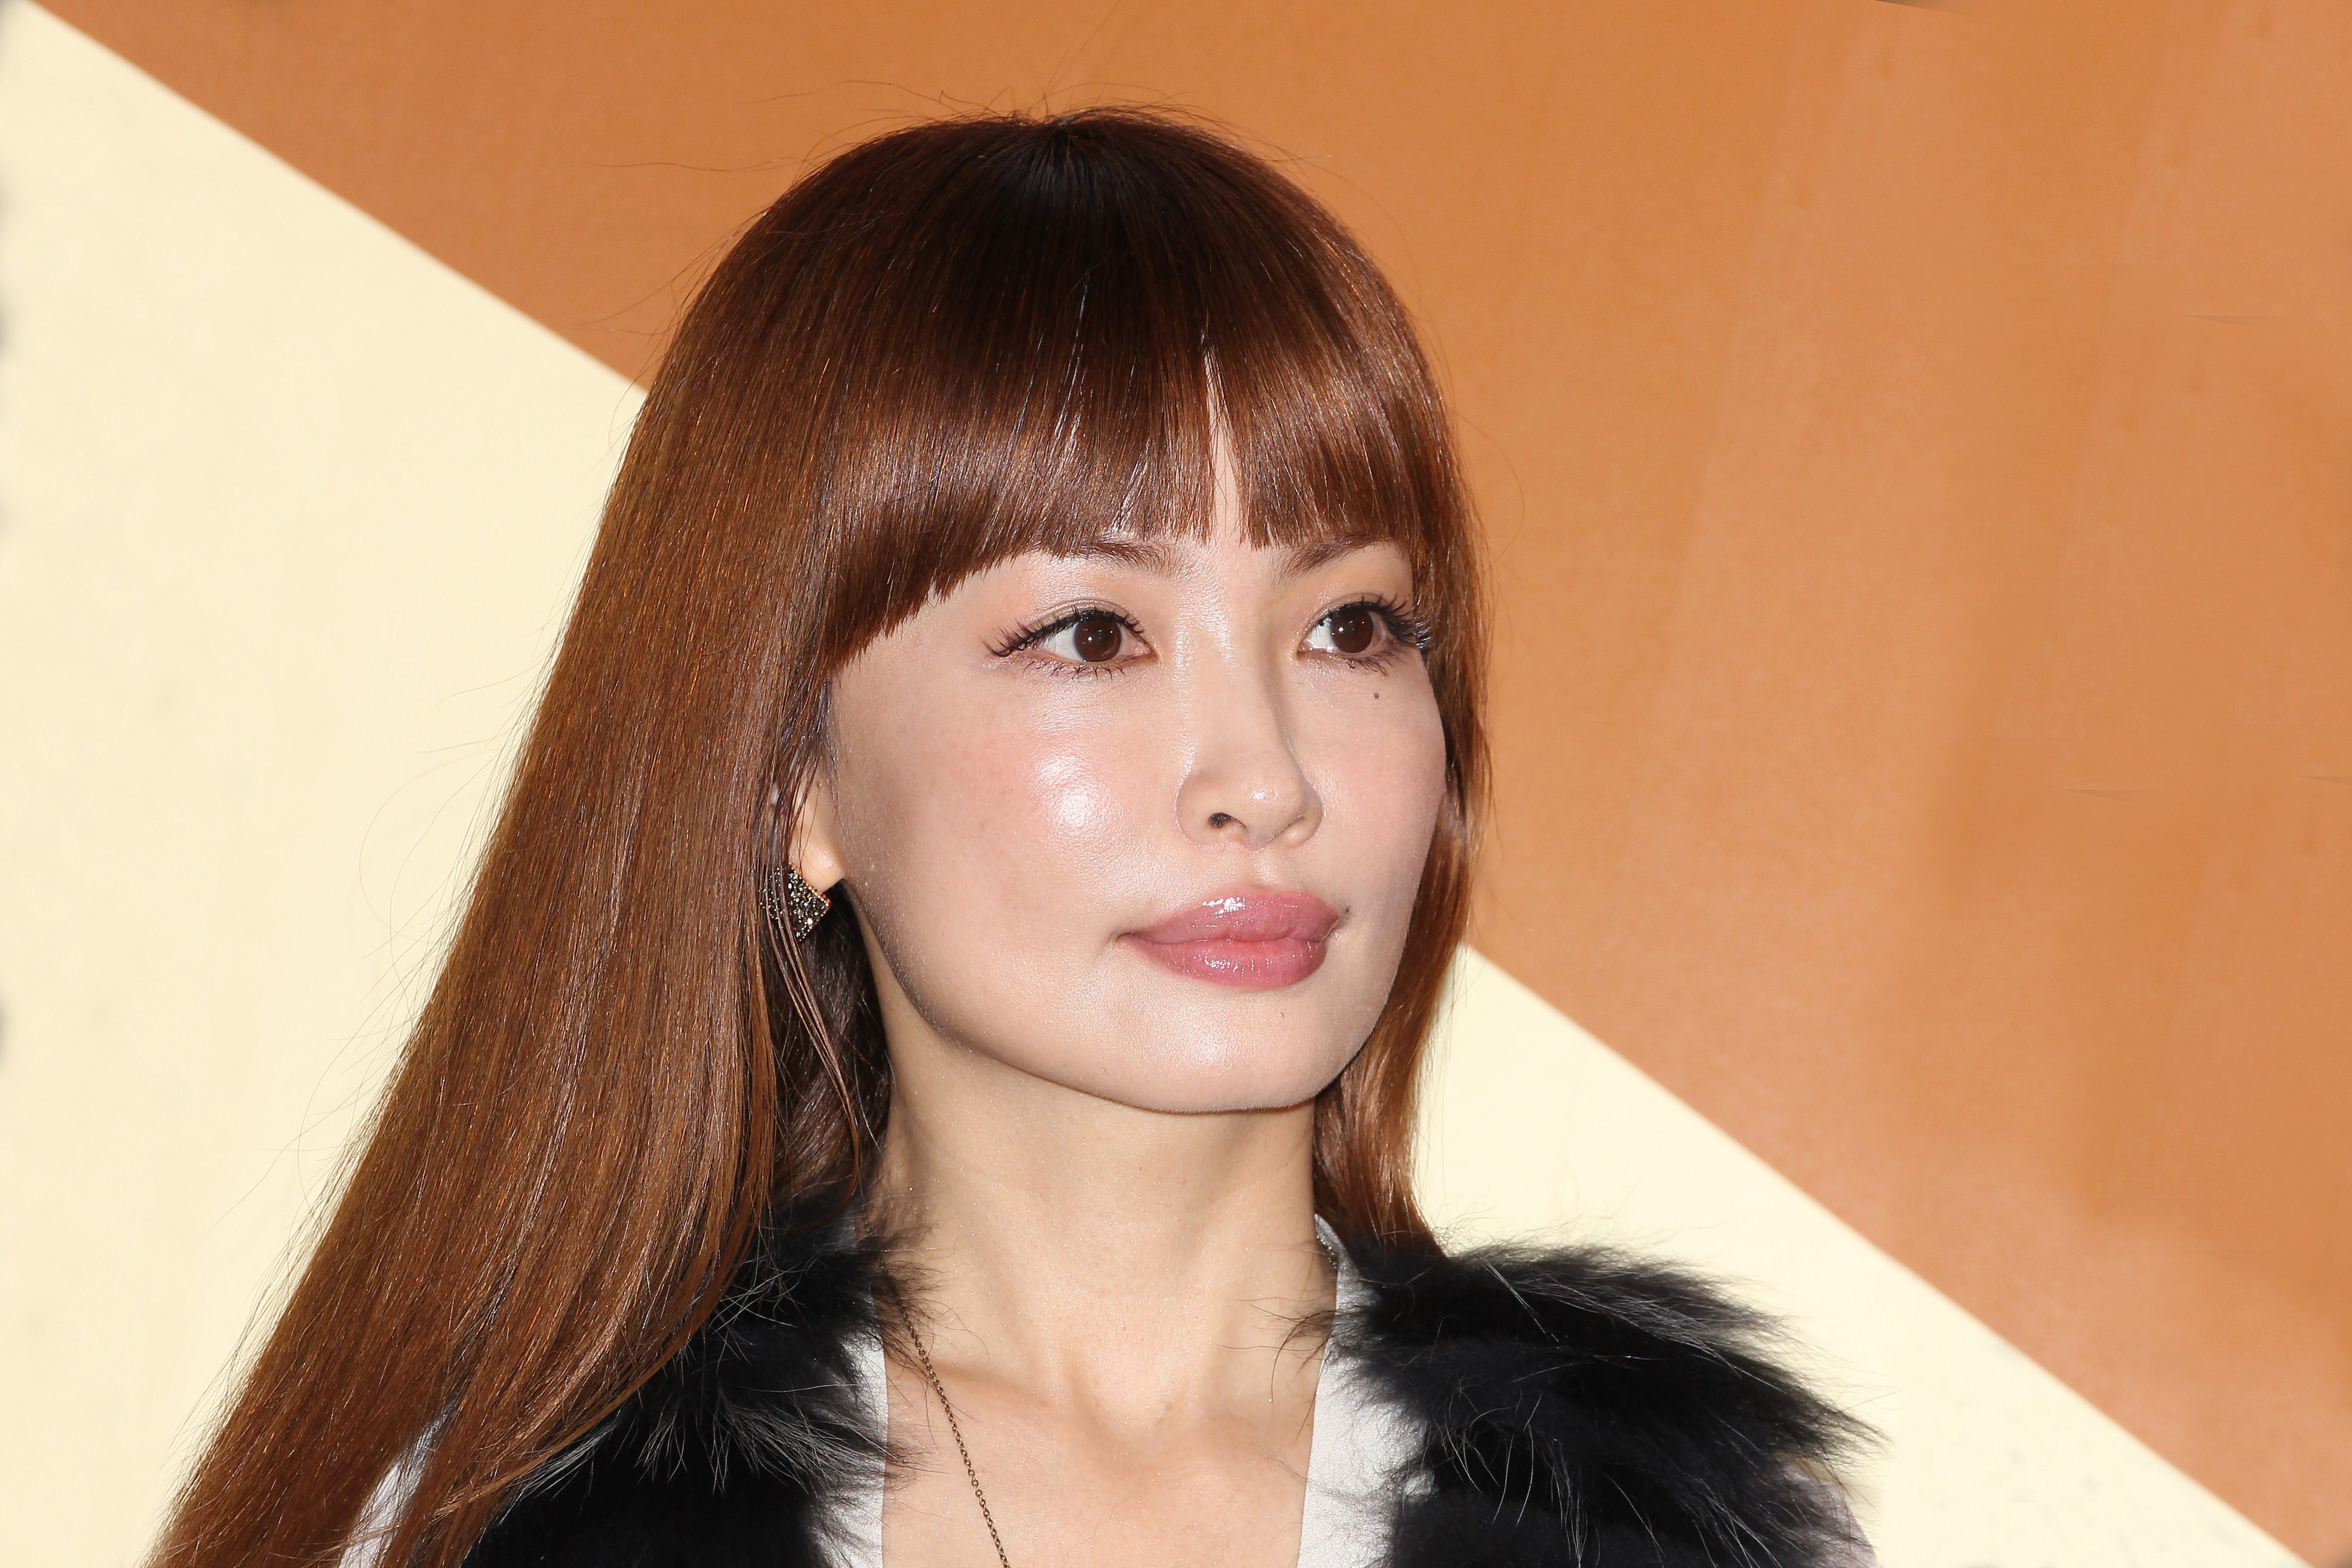 平子理沙 元モデルの母の美貌がすごい ピンクヘアが似合う80歳の美魔女 ニュースサイトしらべぇ